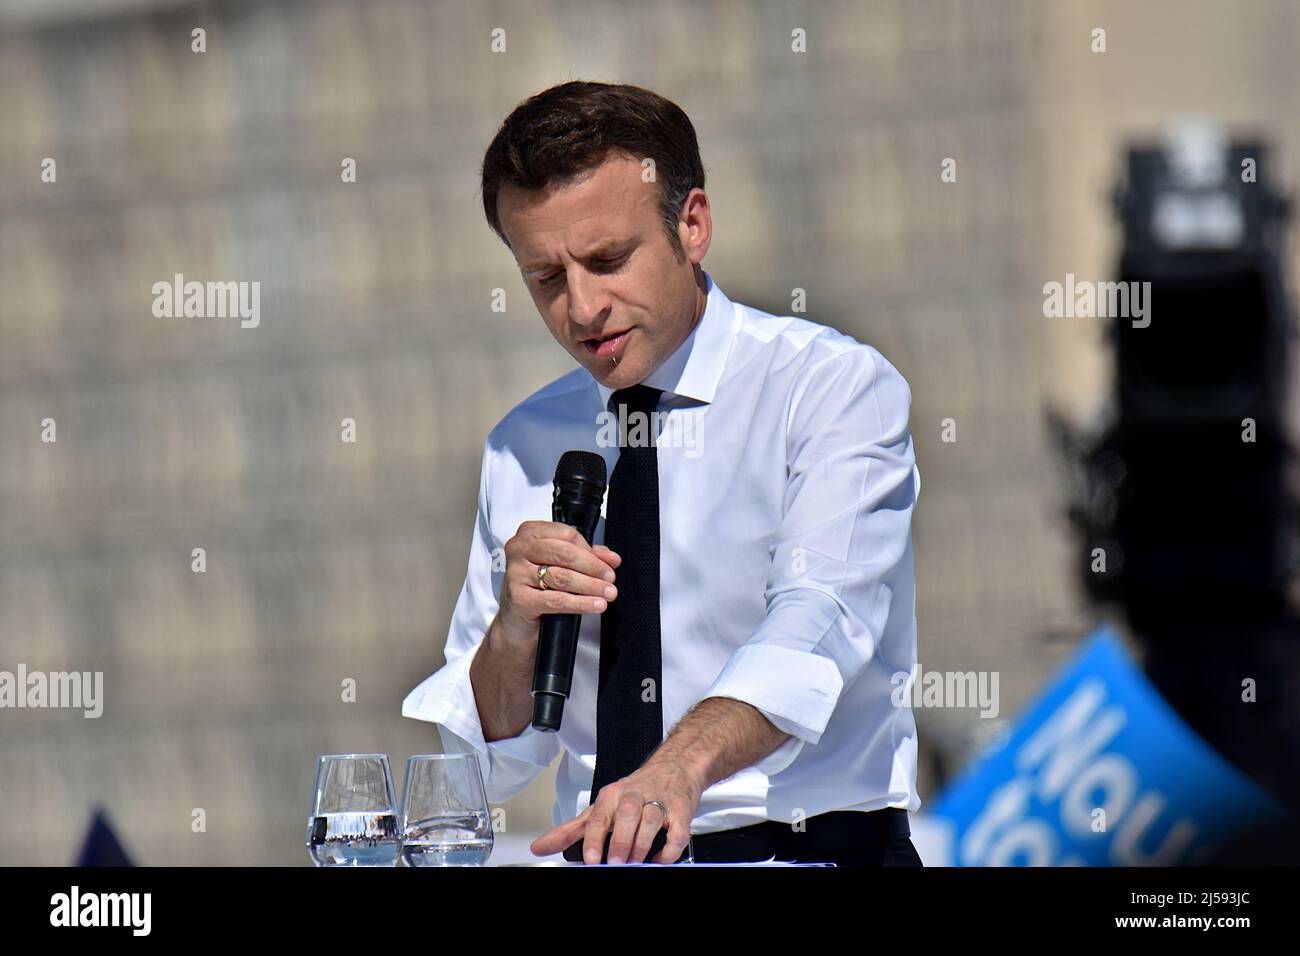 Emmanuel Macron ha tenuto discorsi durante il suo incontro politico. Il Presidente francese Emmanuel Macron candidato all'elezione presidenziale della "la Republique en Marche" (LREM) ha avuto un incontro pubblico a Marsiglia. Il secondo turno delle elezioni presidenziali francesi si svolgerà il 24 aprile. Foto Stock